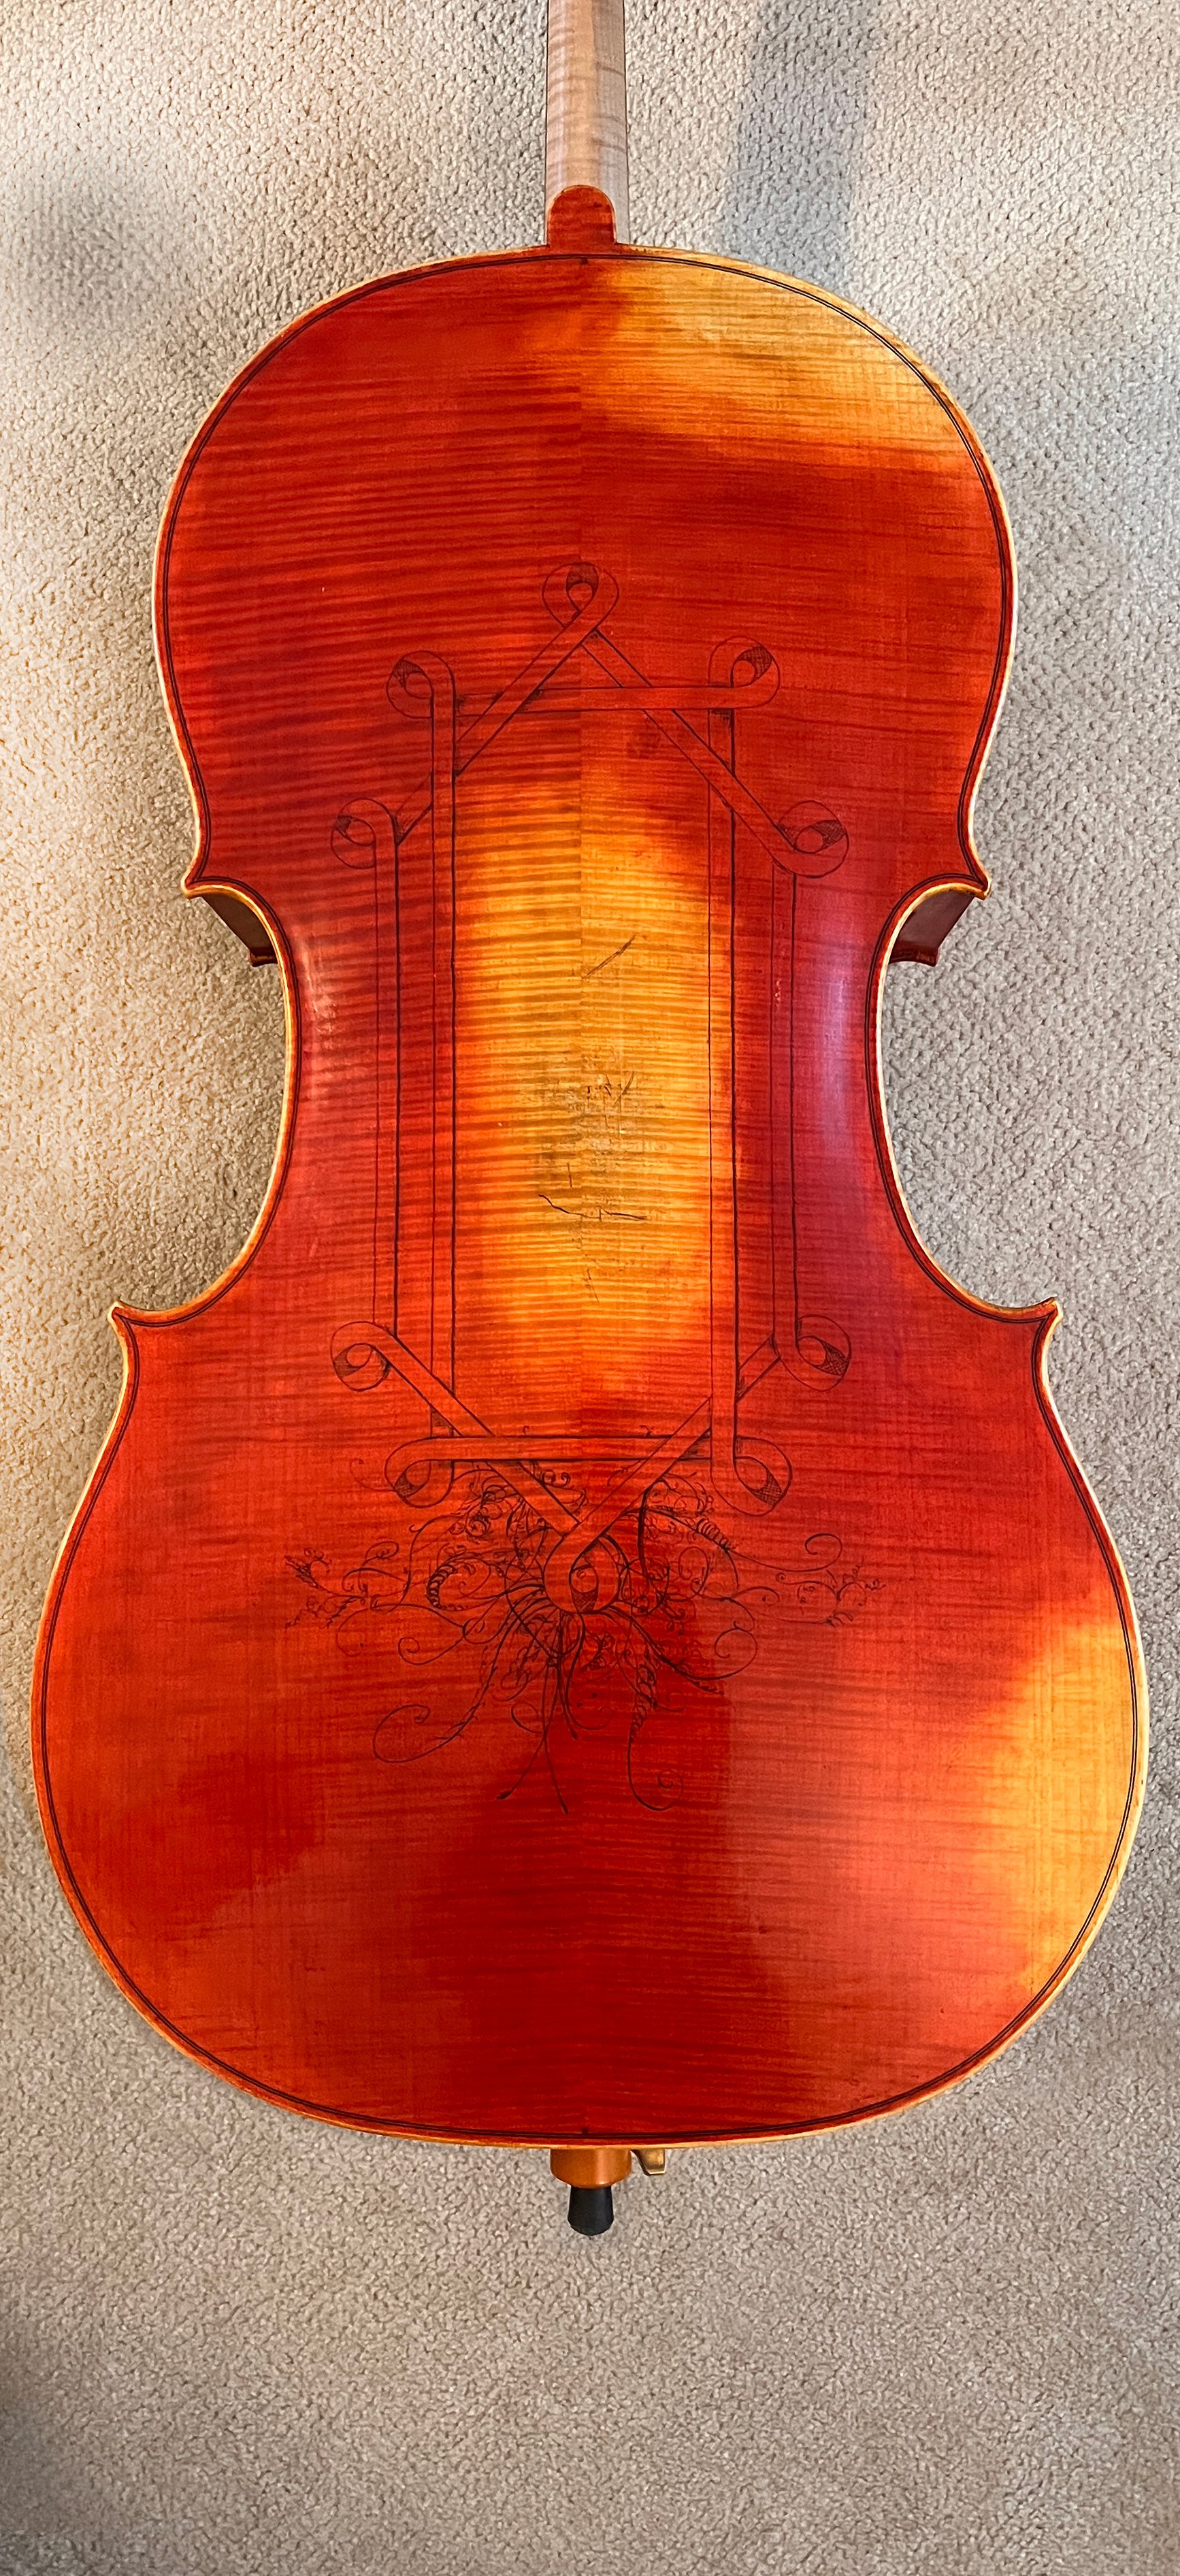 Cello-8-back.jpg